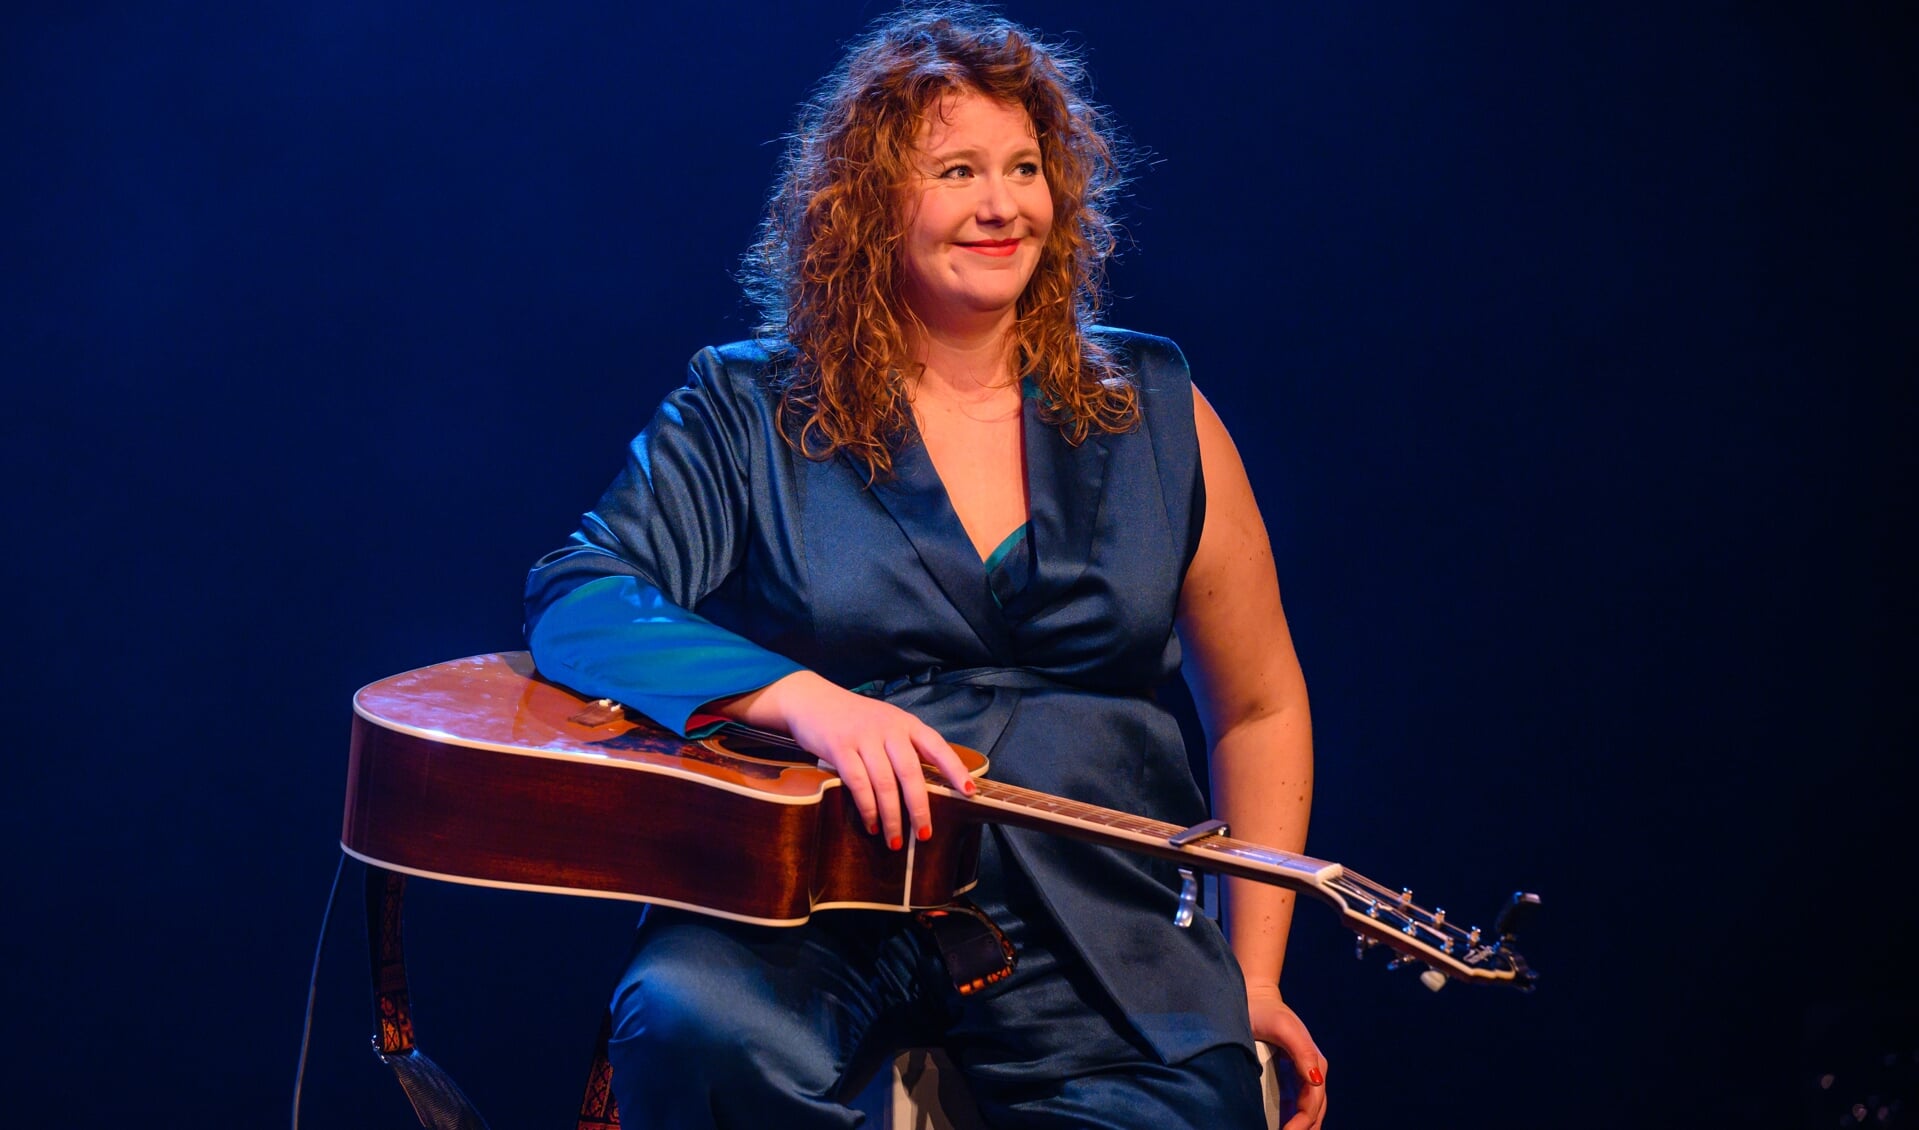 Kiki Schippers brengt op 17 september haar voorstelling 'Meer' in Schouwburg Amstelveen.